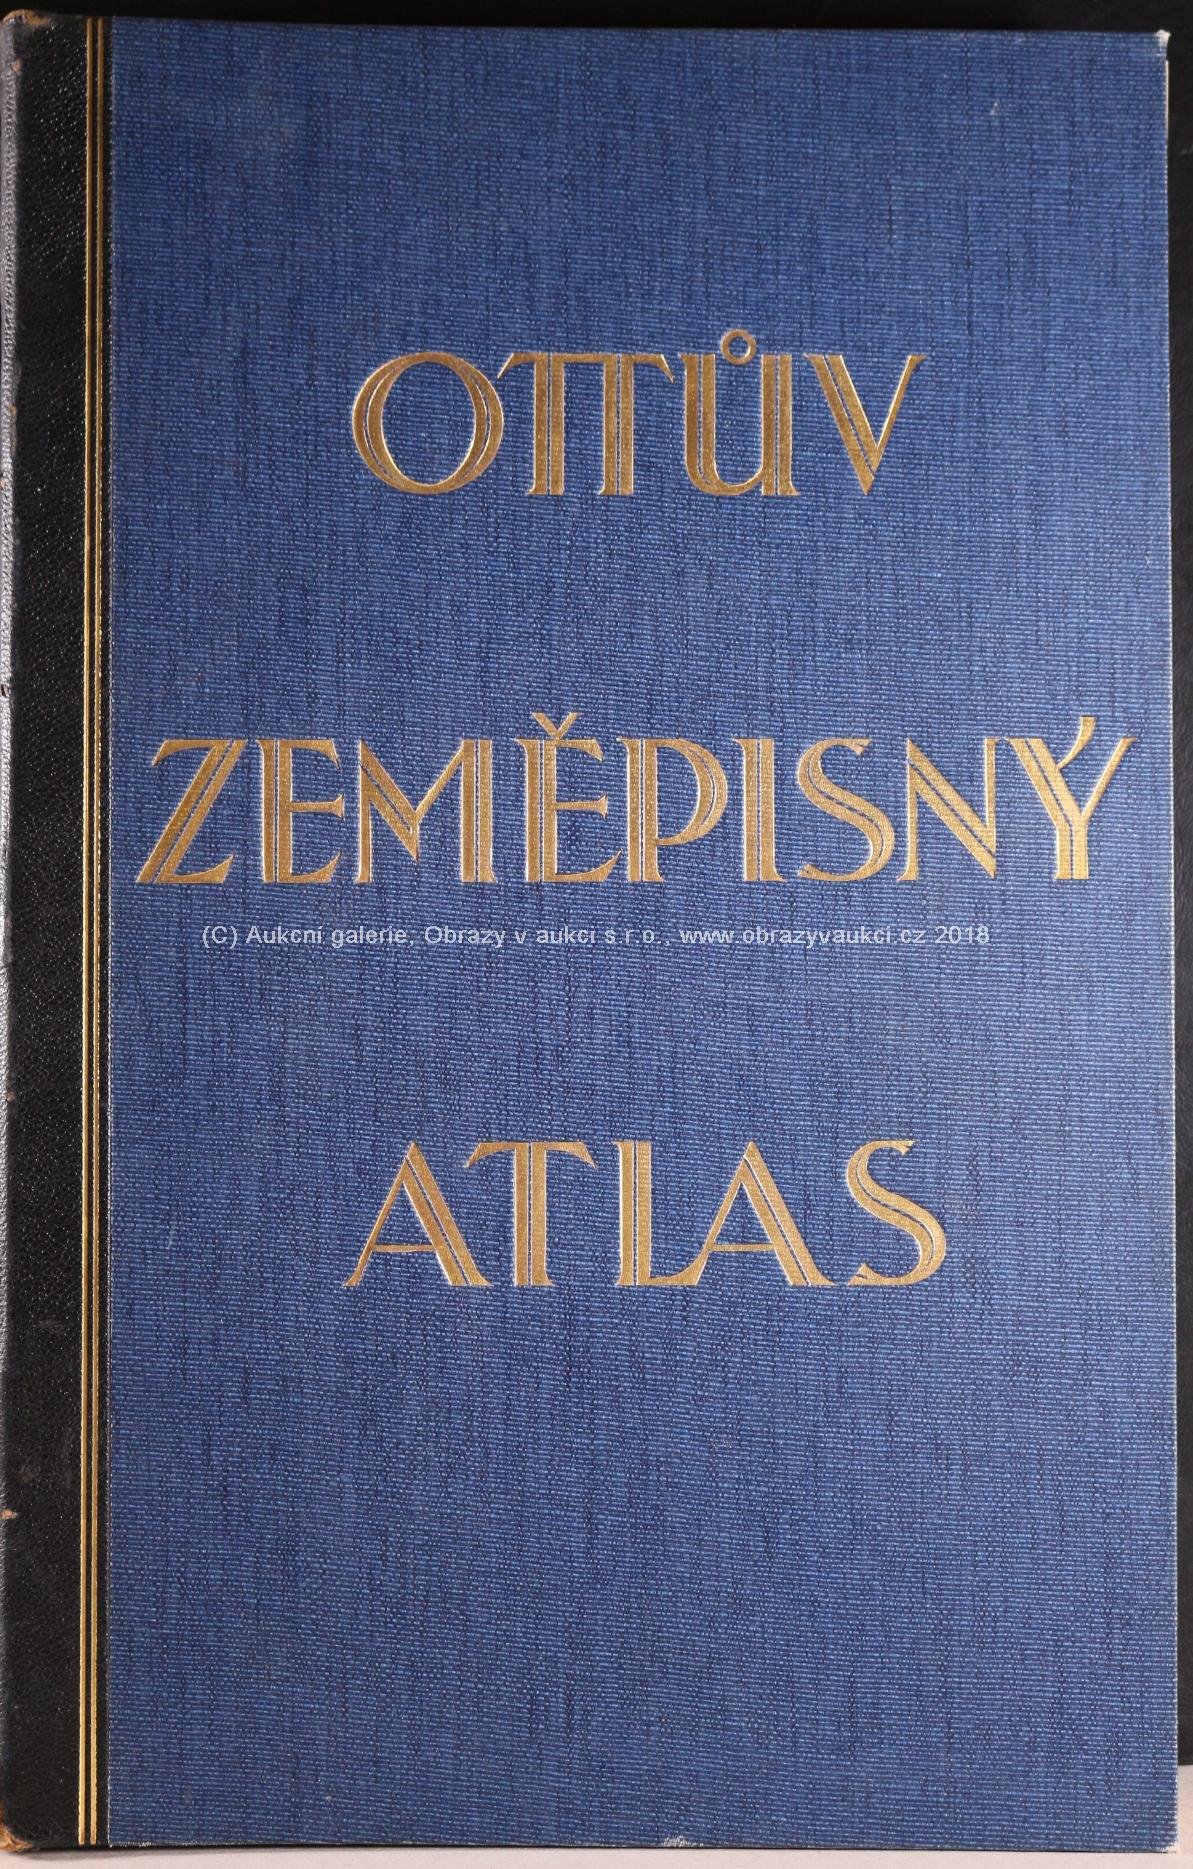 . - Ottův zeměpisný atlas